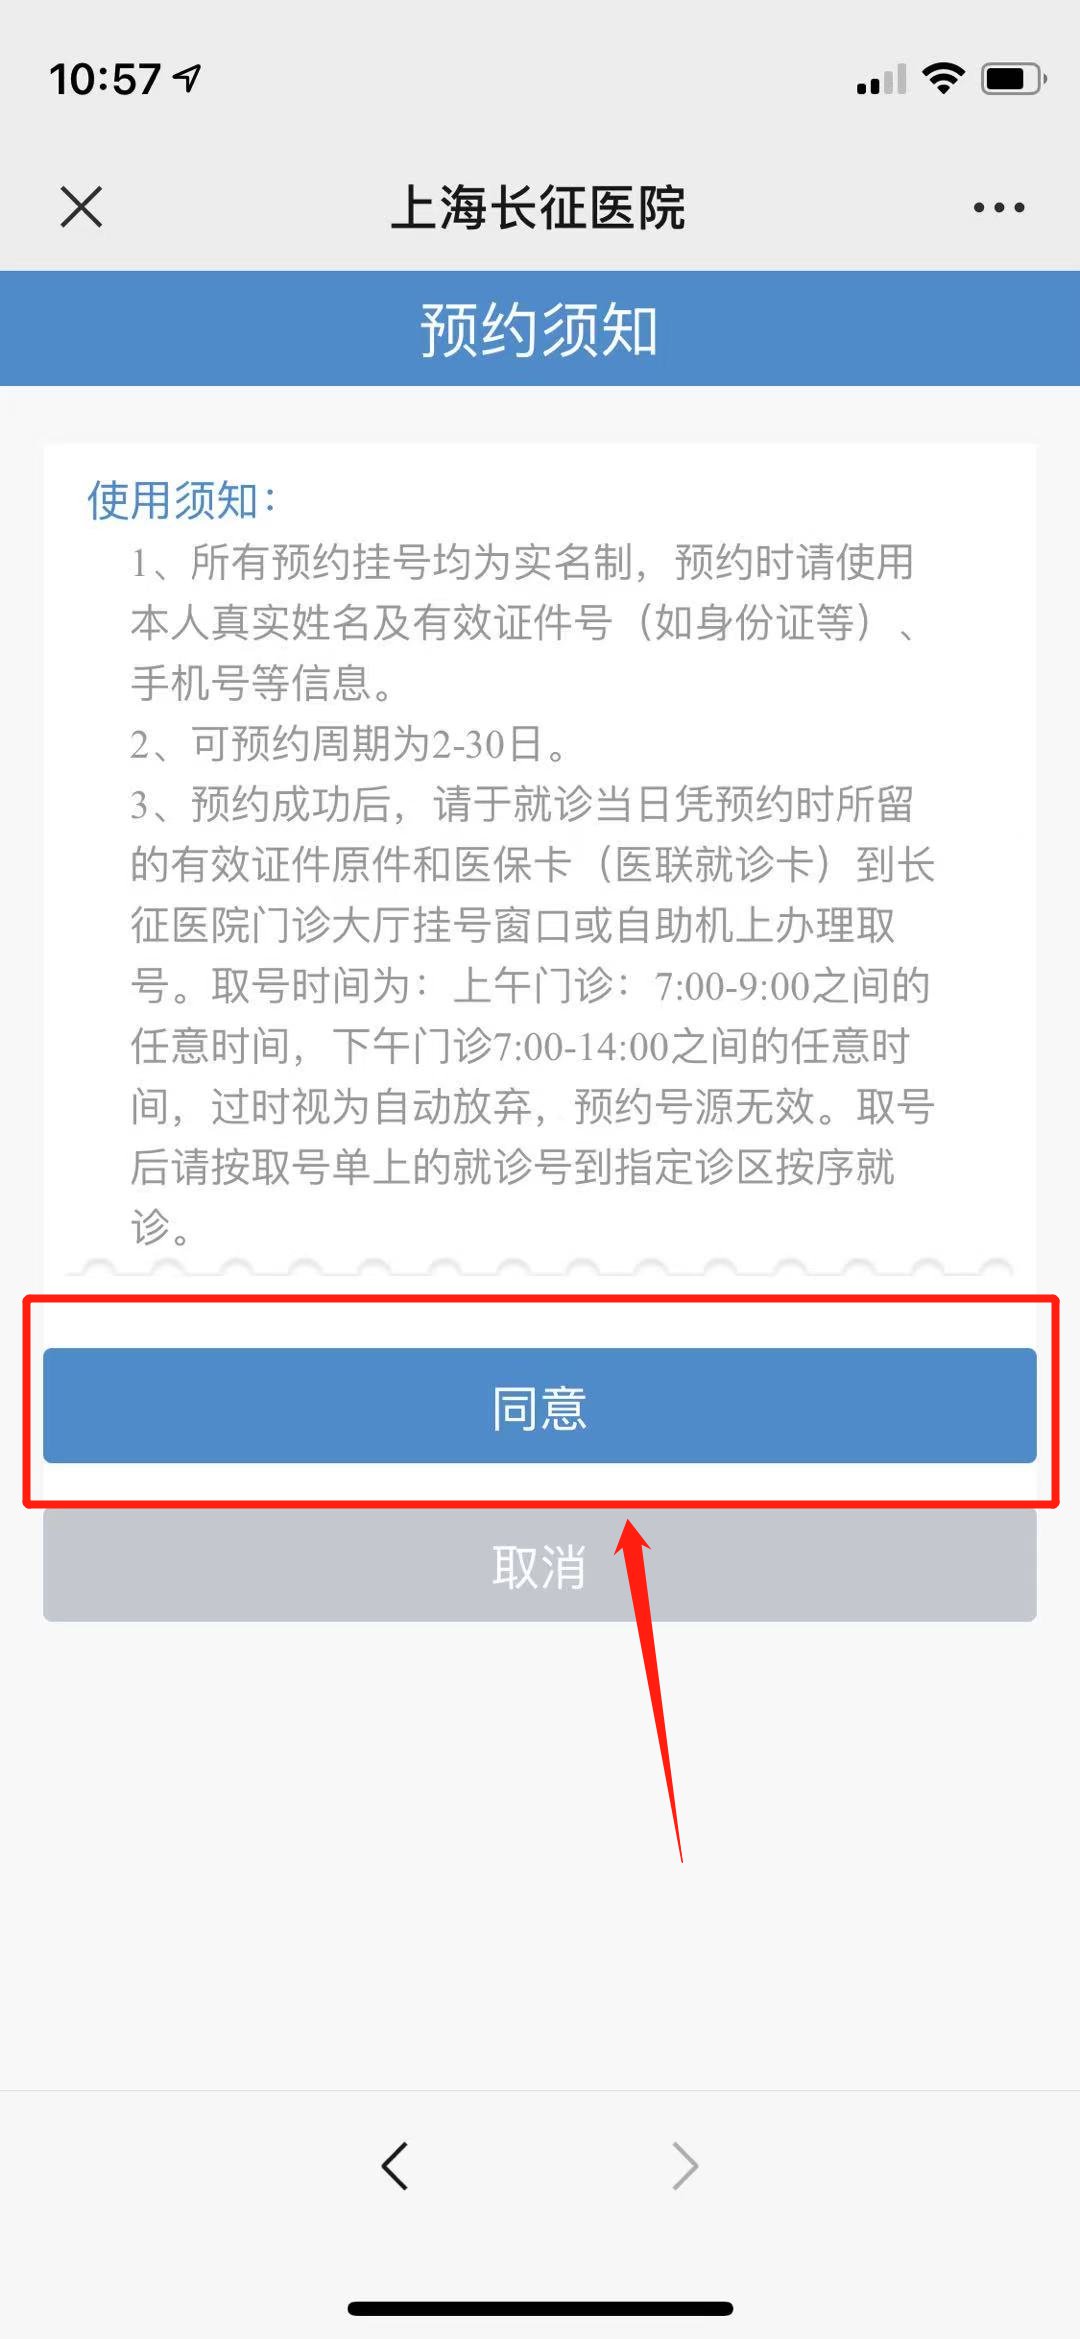 北京中医院网上预约挂号，预约成功再收费-北京市中医院预约挂号平台近期可预约挂号吗?